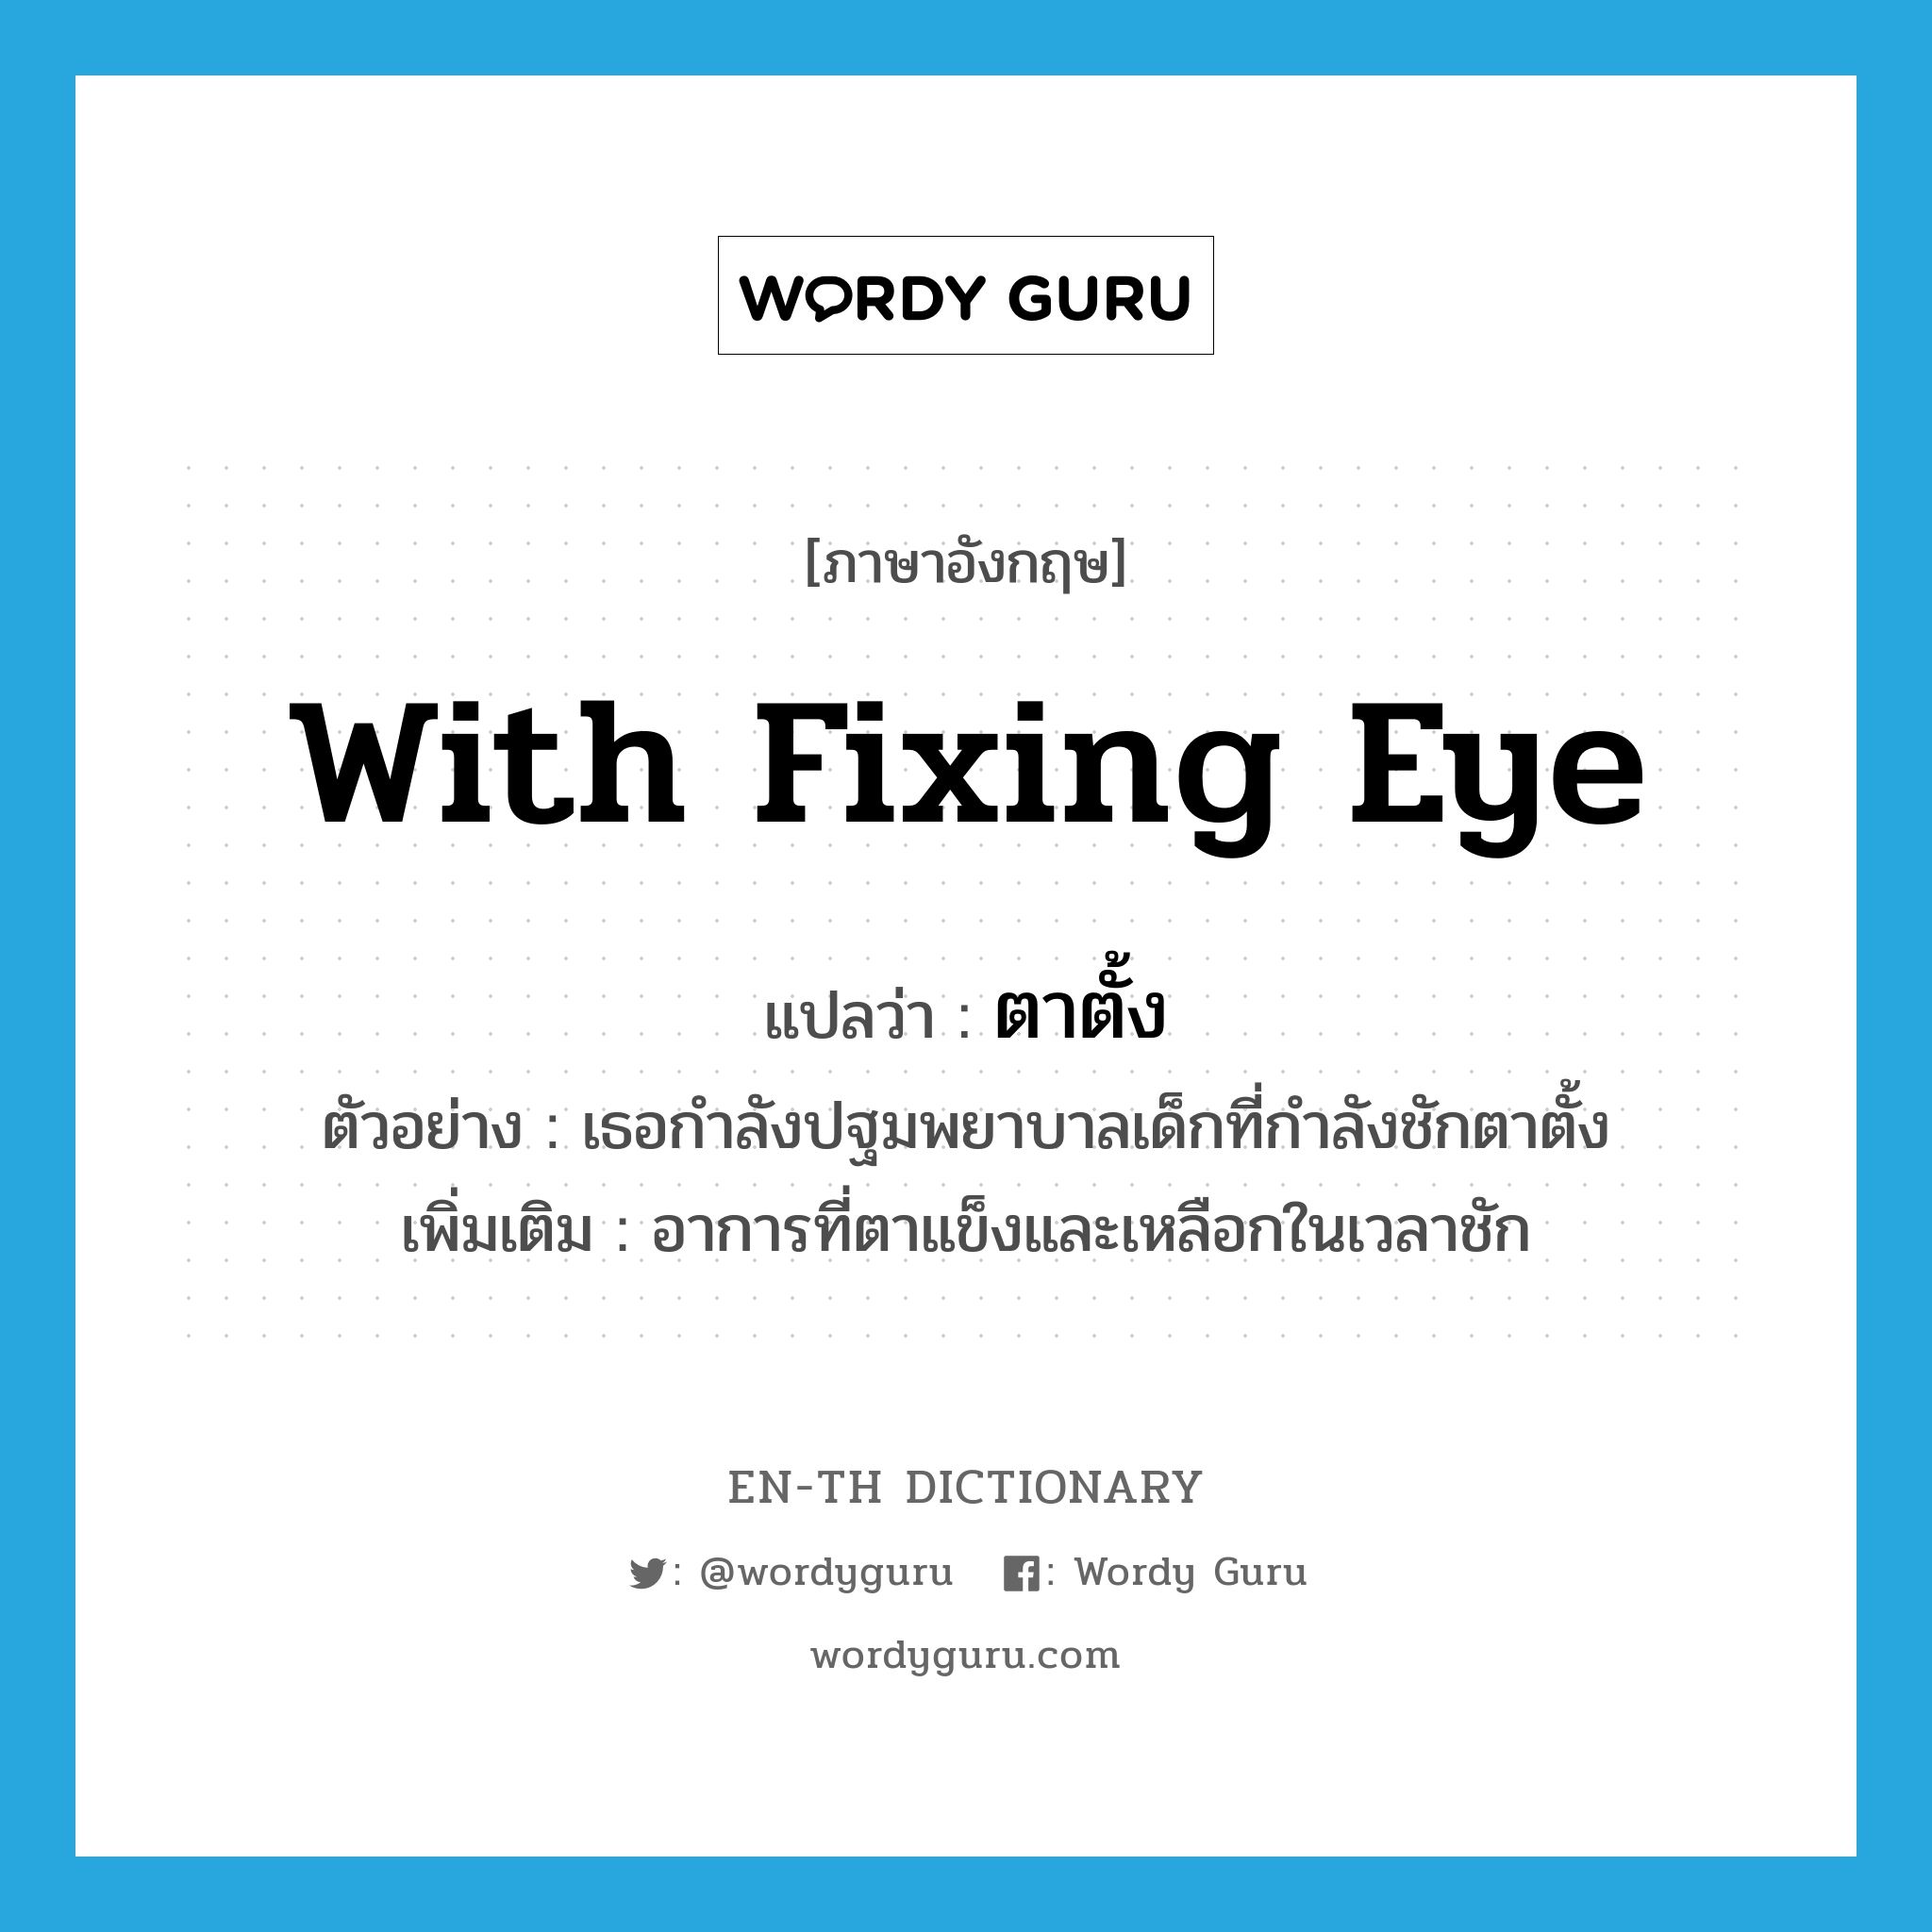 ตาตั้ง ภาษาอังกฤษ?, คำศัพท์ภาษาอังกฤษ ตาตั้ง แปลว่า with fixing eye ประเภท ADV ตัวอย่าง เธอกำลังปฐมพยาบาลเด็กที่กำลังชักตาตั้ง เพิ่มเติม อาการที่ตาแข็งและเหลือกในเวลาชัก หมวด ADV